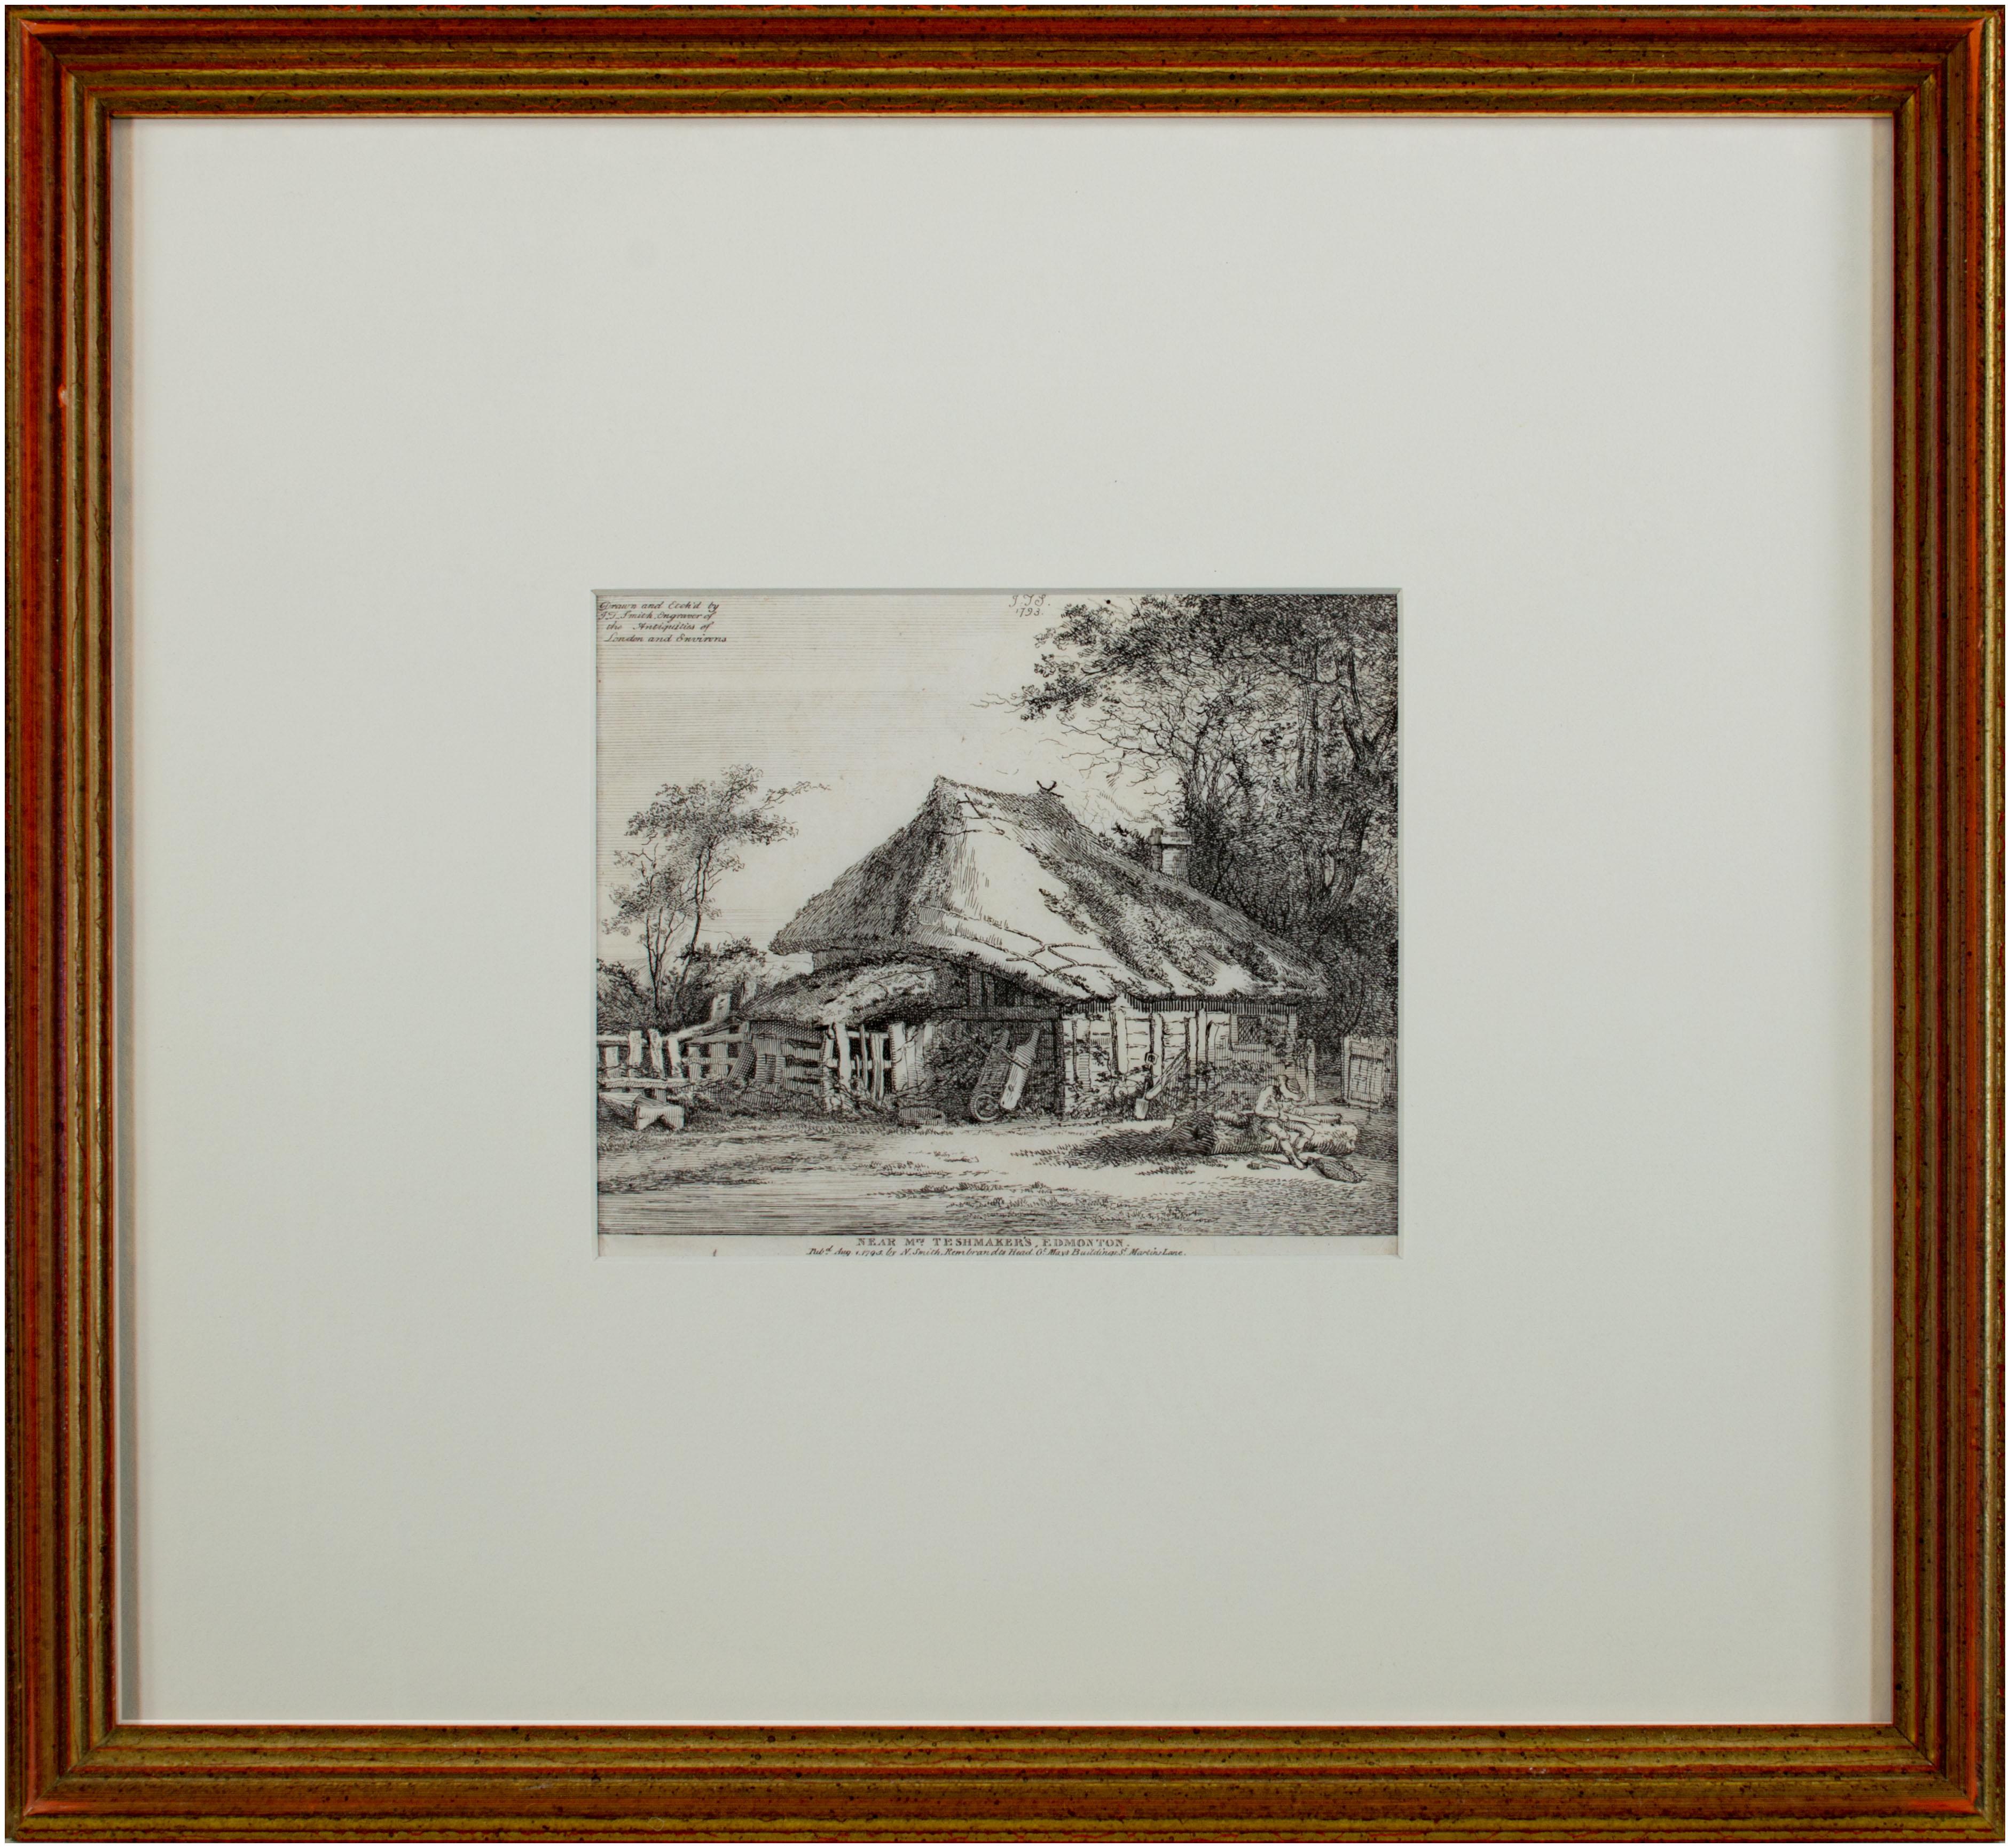 Le présent document est l'une des nombreuses gravures que John Thomas Smith a réalisées sur les cottages anglais et l'architecture vernaculaire. Cet exemple, une vue d'un cottage à Edmonton, est étroitement lié à une série de 20 gravures que Smith